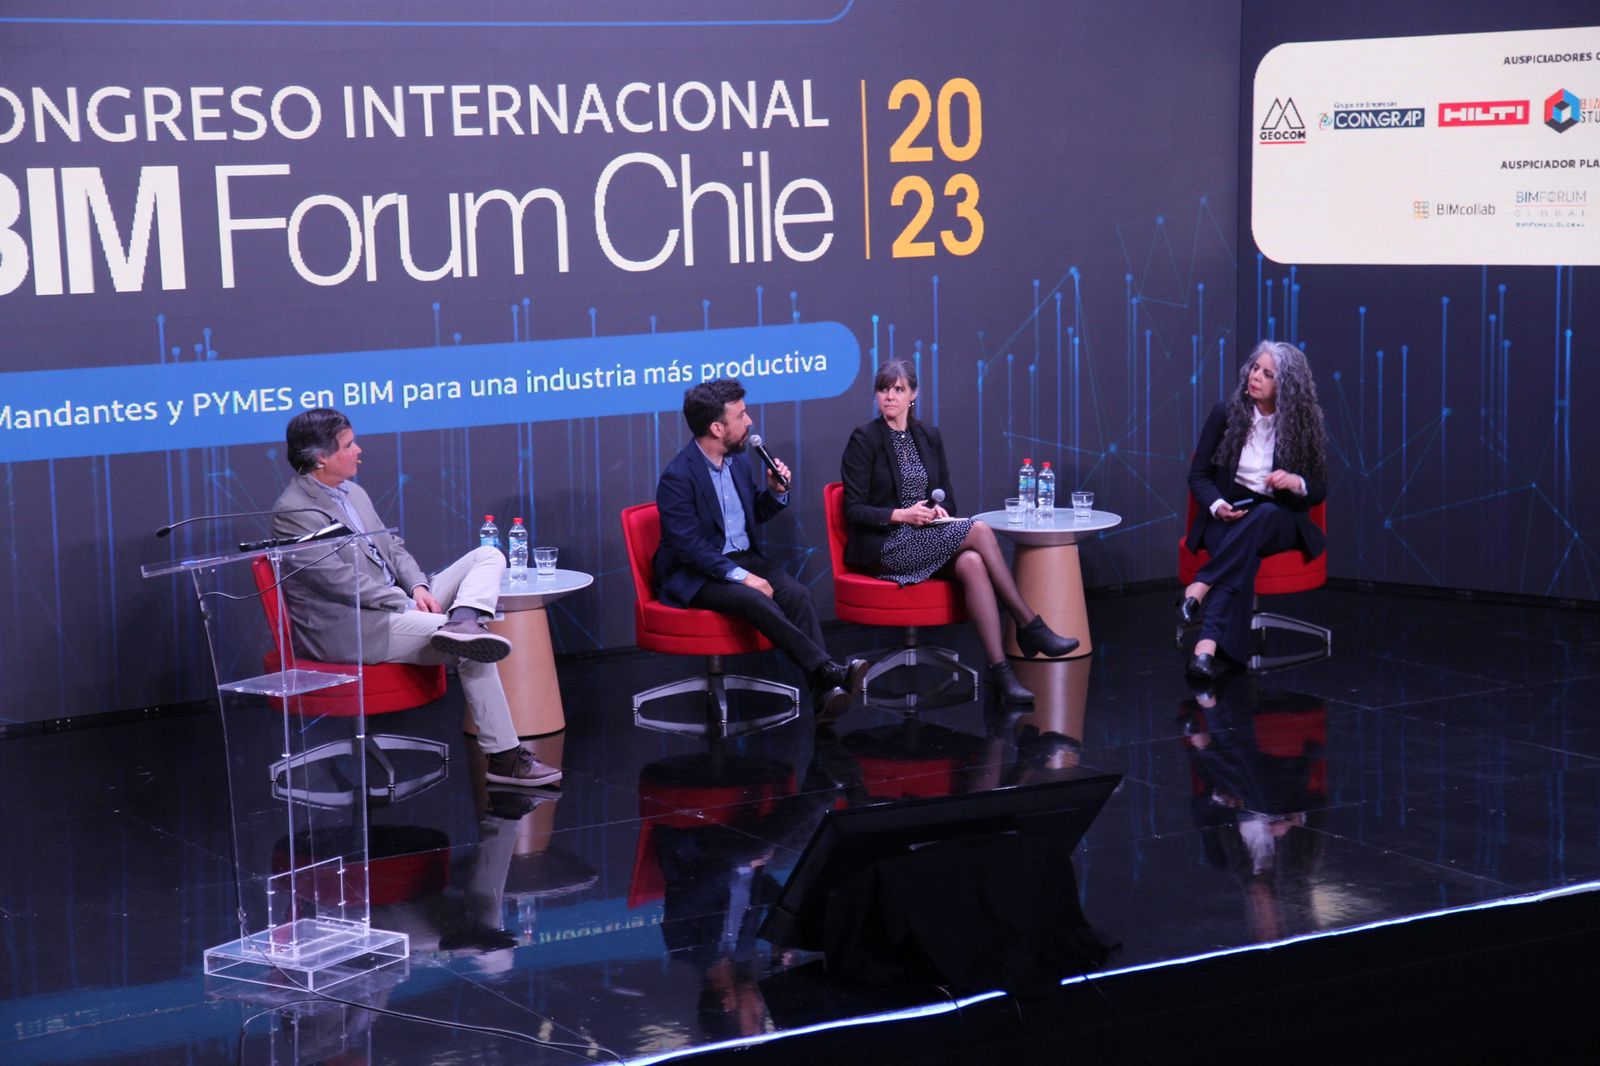 Desafíos para mandantes y pymes abordó el tercer Congreso Internacional BIM Forum Chile